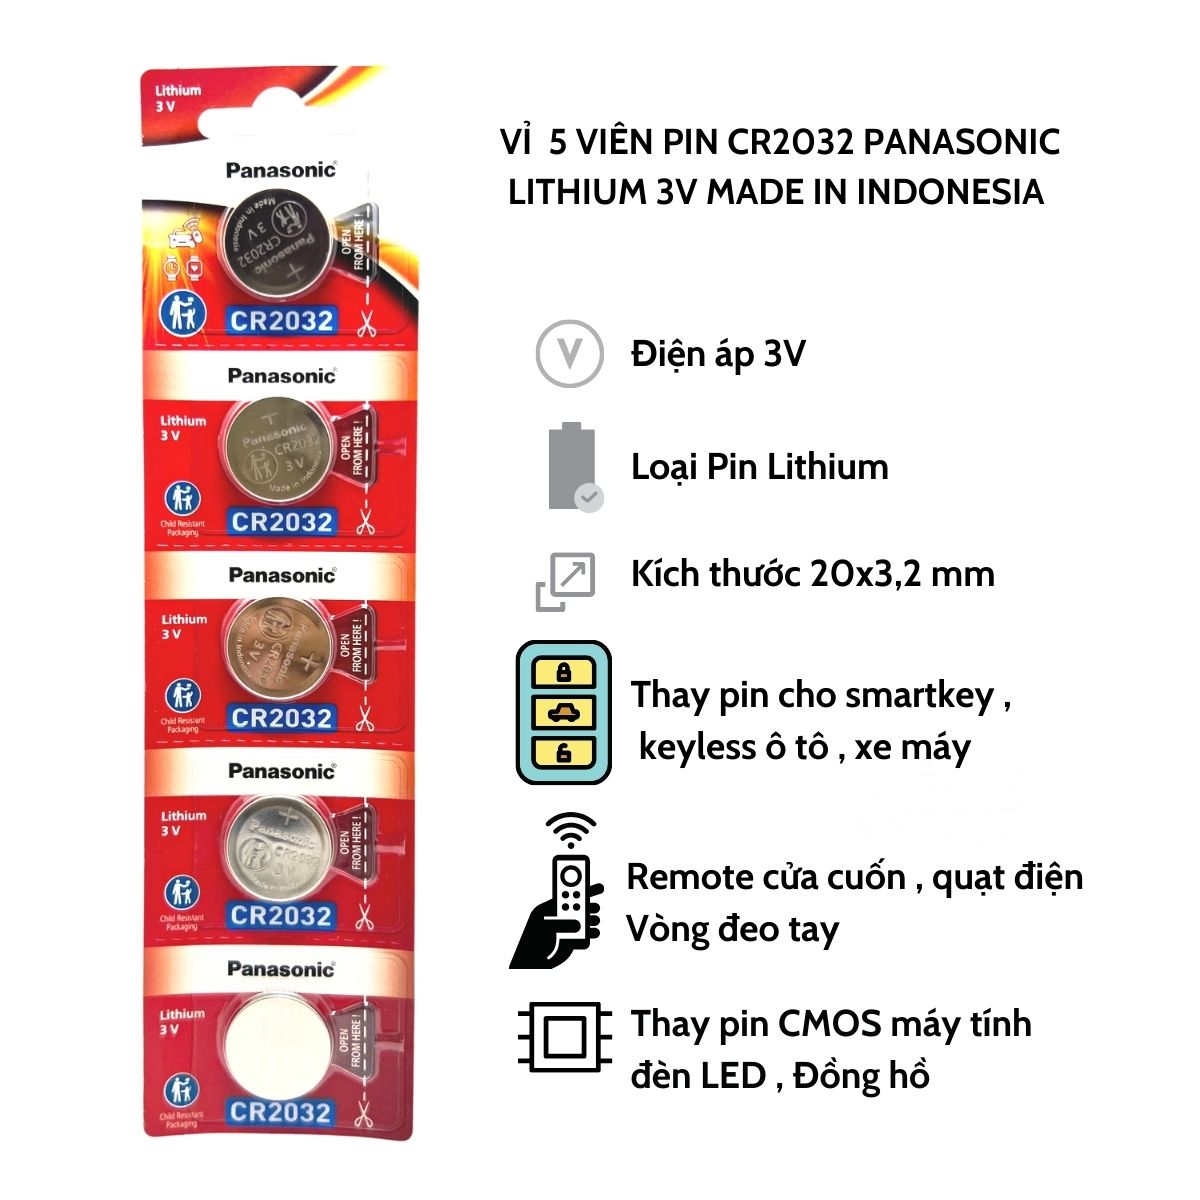 Vỉ 5 Viên Pin CR2032 Panasonic Lithium 3V Made In Indonesia  - Hàng Chính Hãng